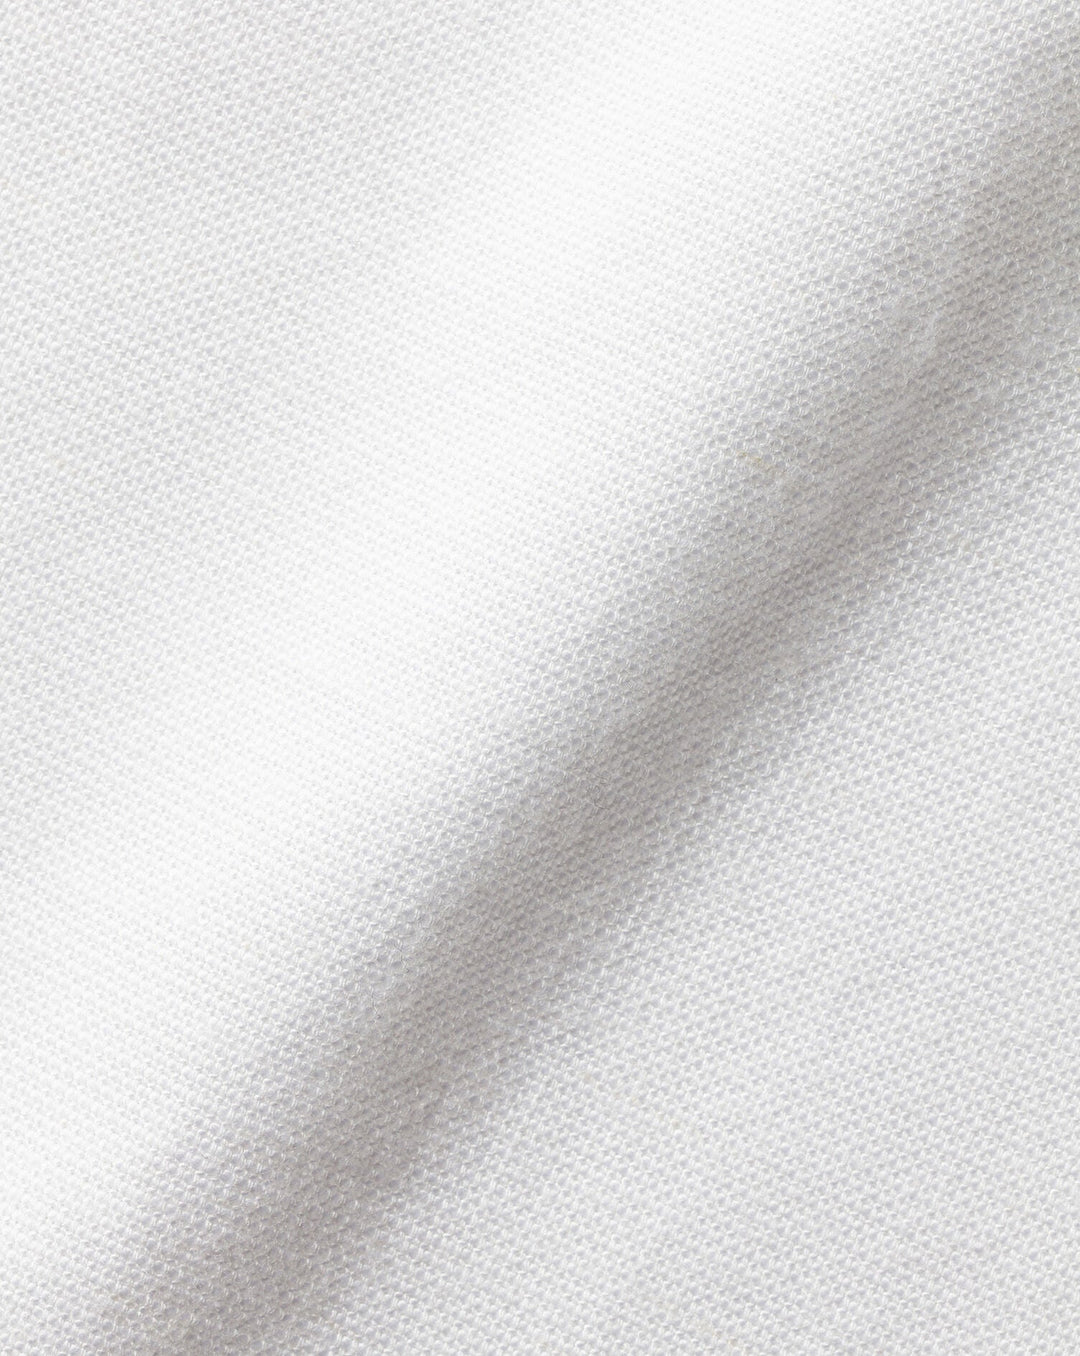 Charles Tyrwhitt White Plain Slim Fit Cotton Linen Collarless Shirt